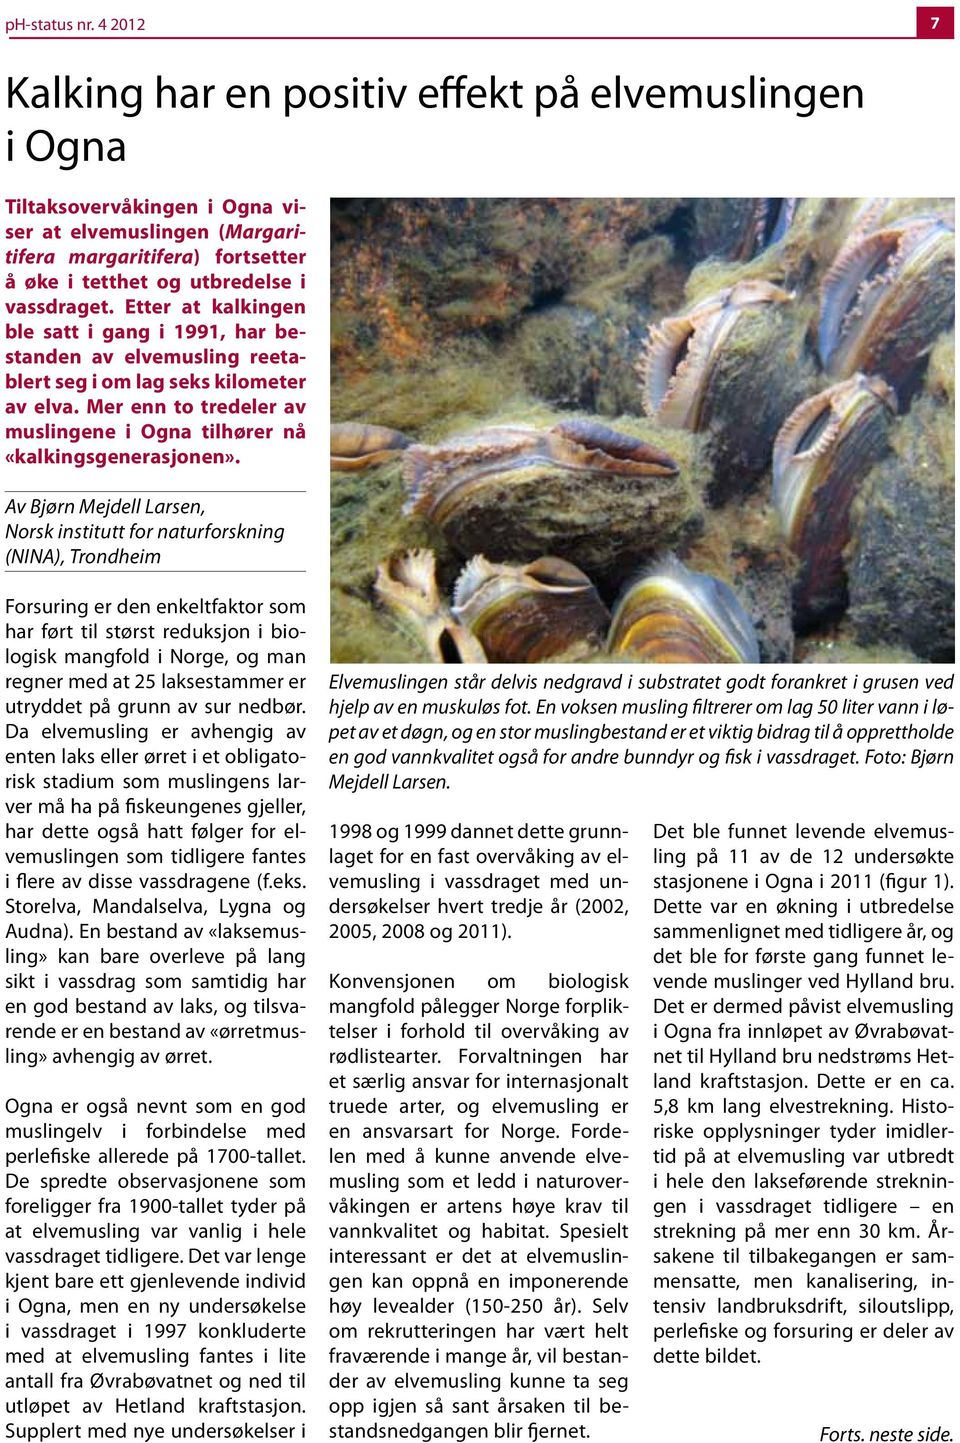 Etter at kalkingen ble satt i gang i 1991, har bestanden av elvemusling reetablert seg i om lag seks kilometer av elva. Mer enn to tredeler av muslingene i Ogna tilhører nå «kalkingsgenerasjonen».